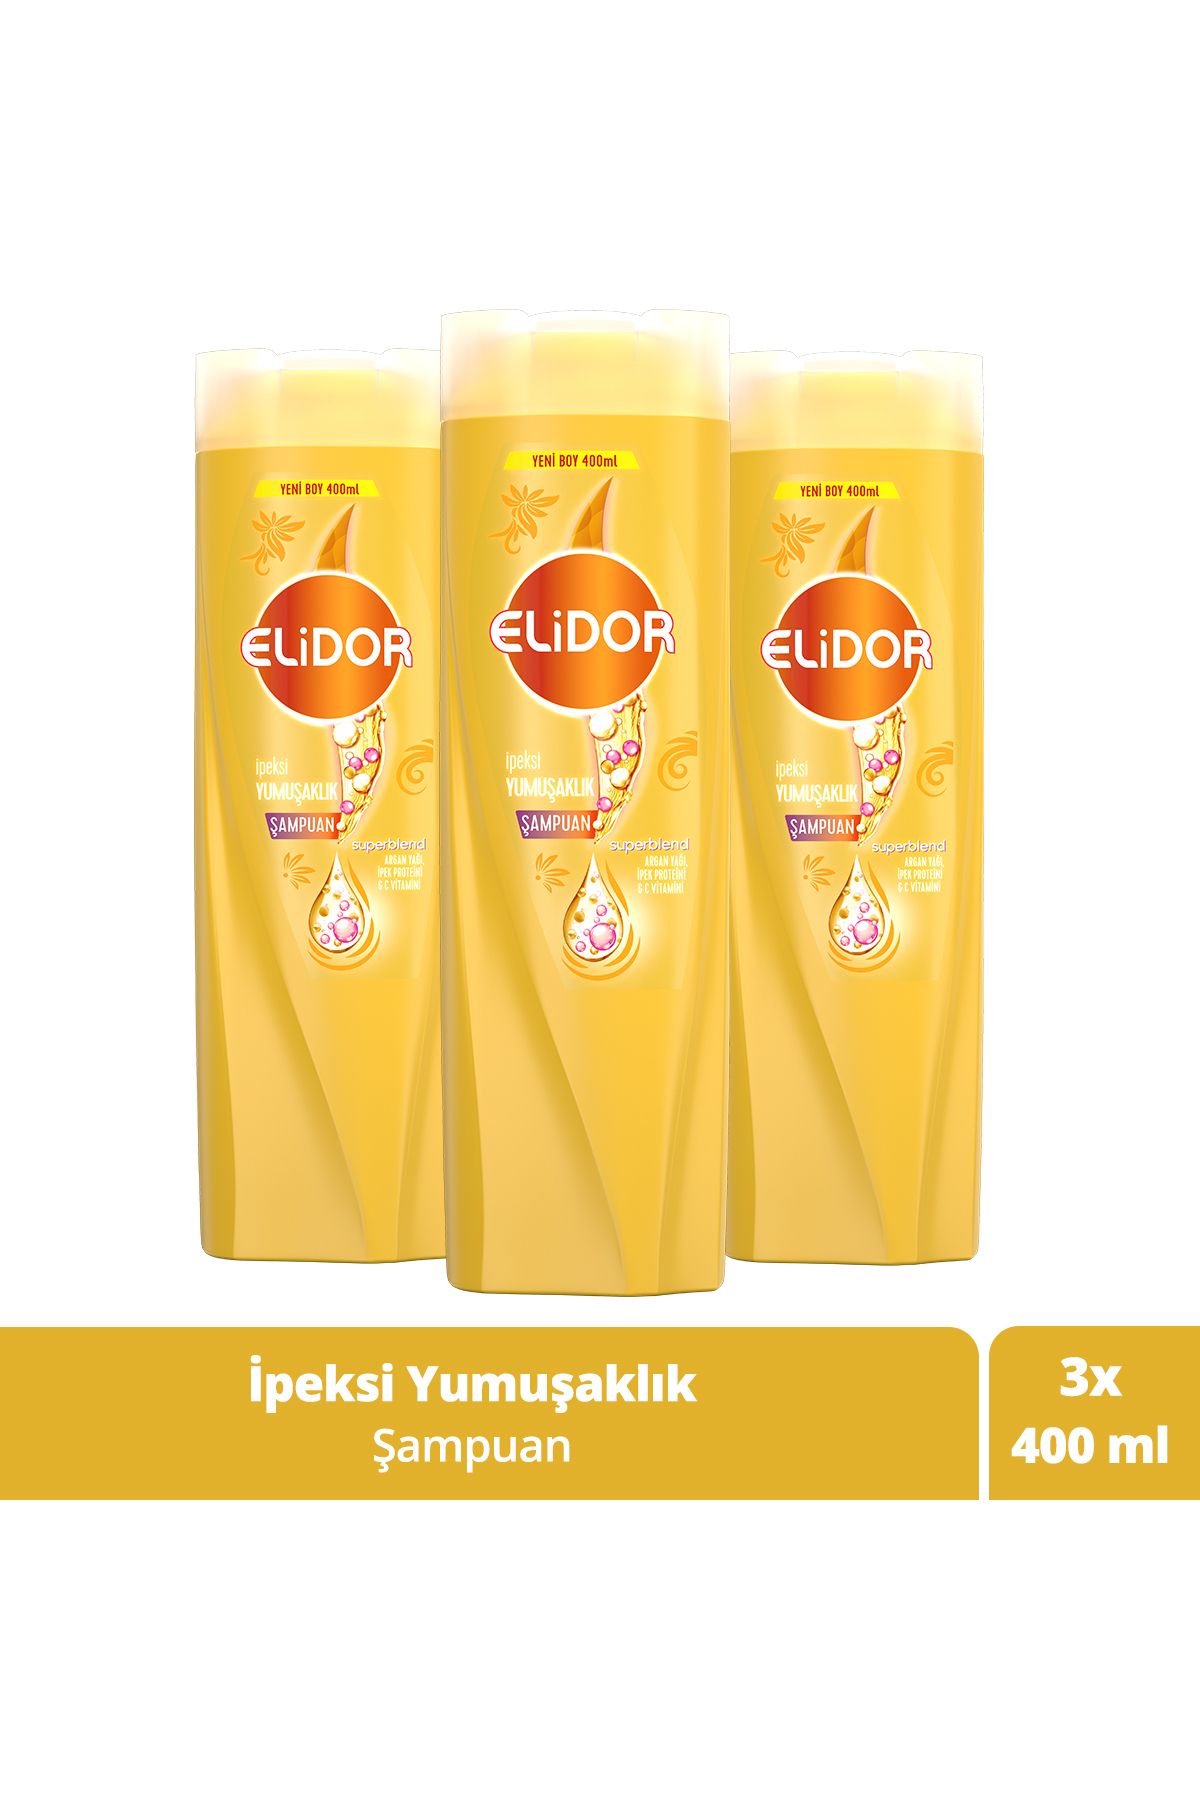 Elidor Superblend Saç Bakım Şampuanı Ipeksi Yumuşaklık Argan Yağı Ipek Proteini C Vitamini 400 ml X3